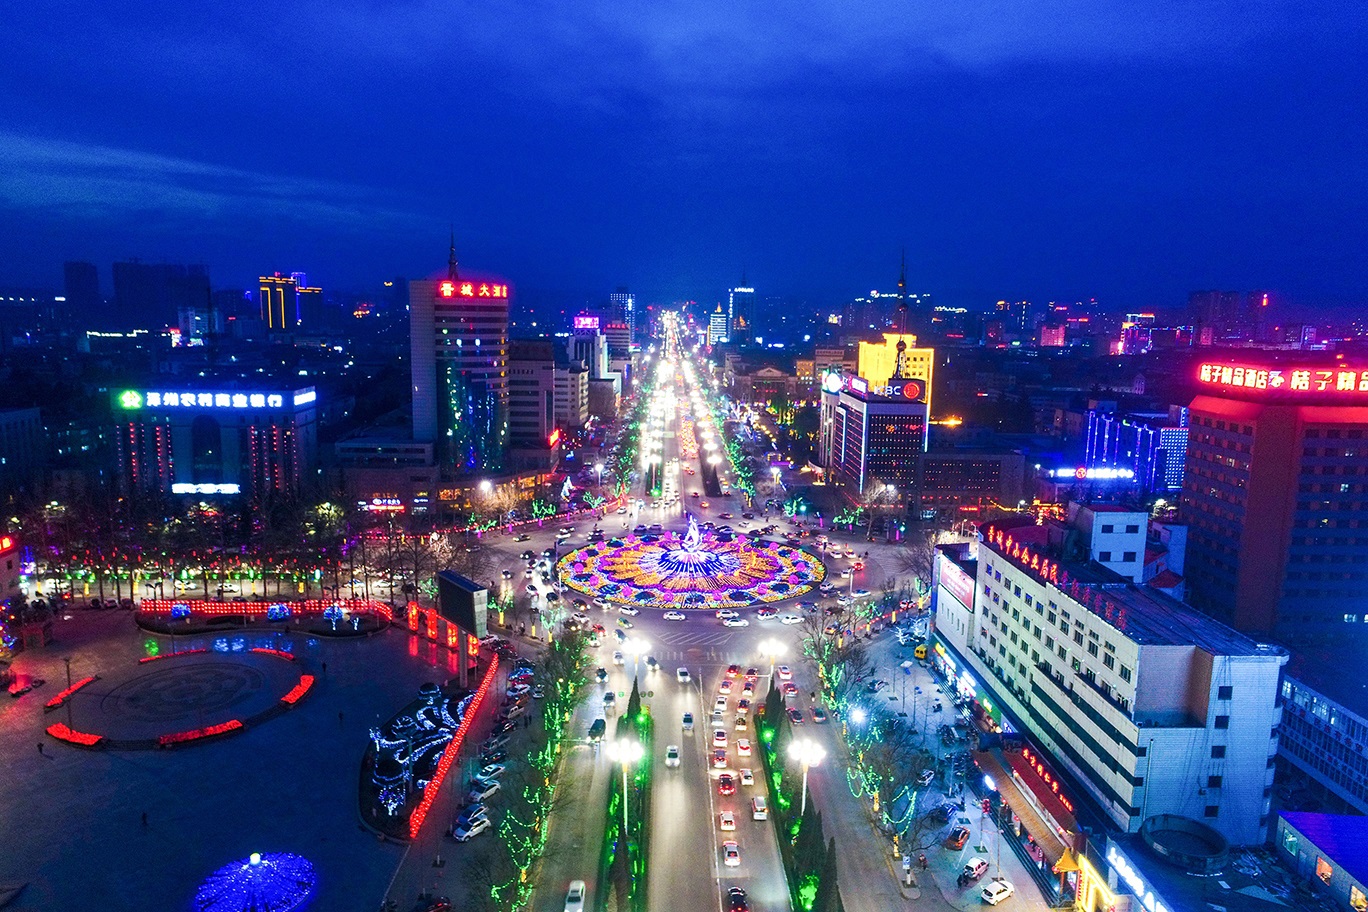 印度博主拍摄中国晋城,印度网友:晋城城市能排进印度城市前五名